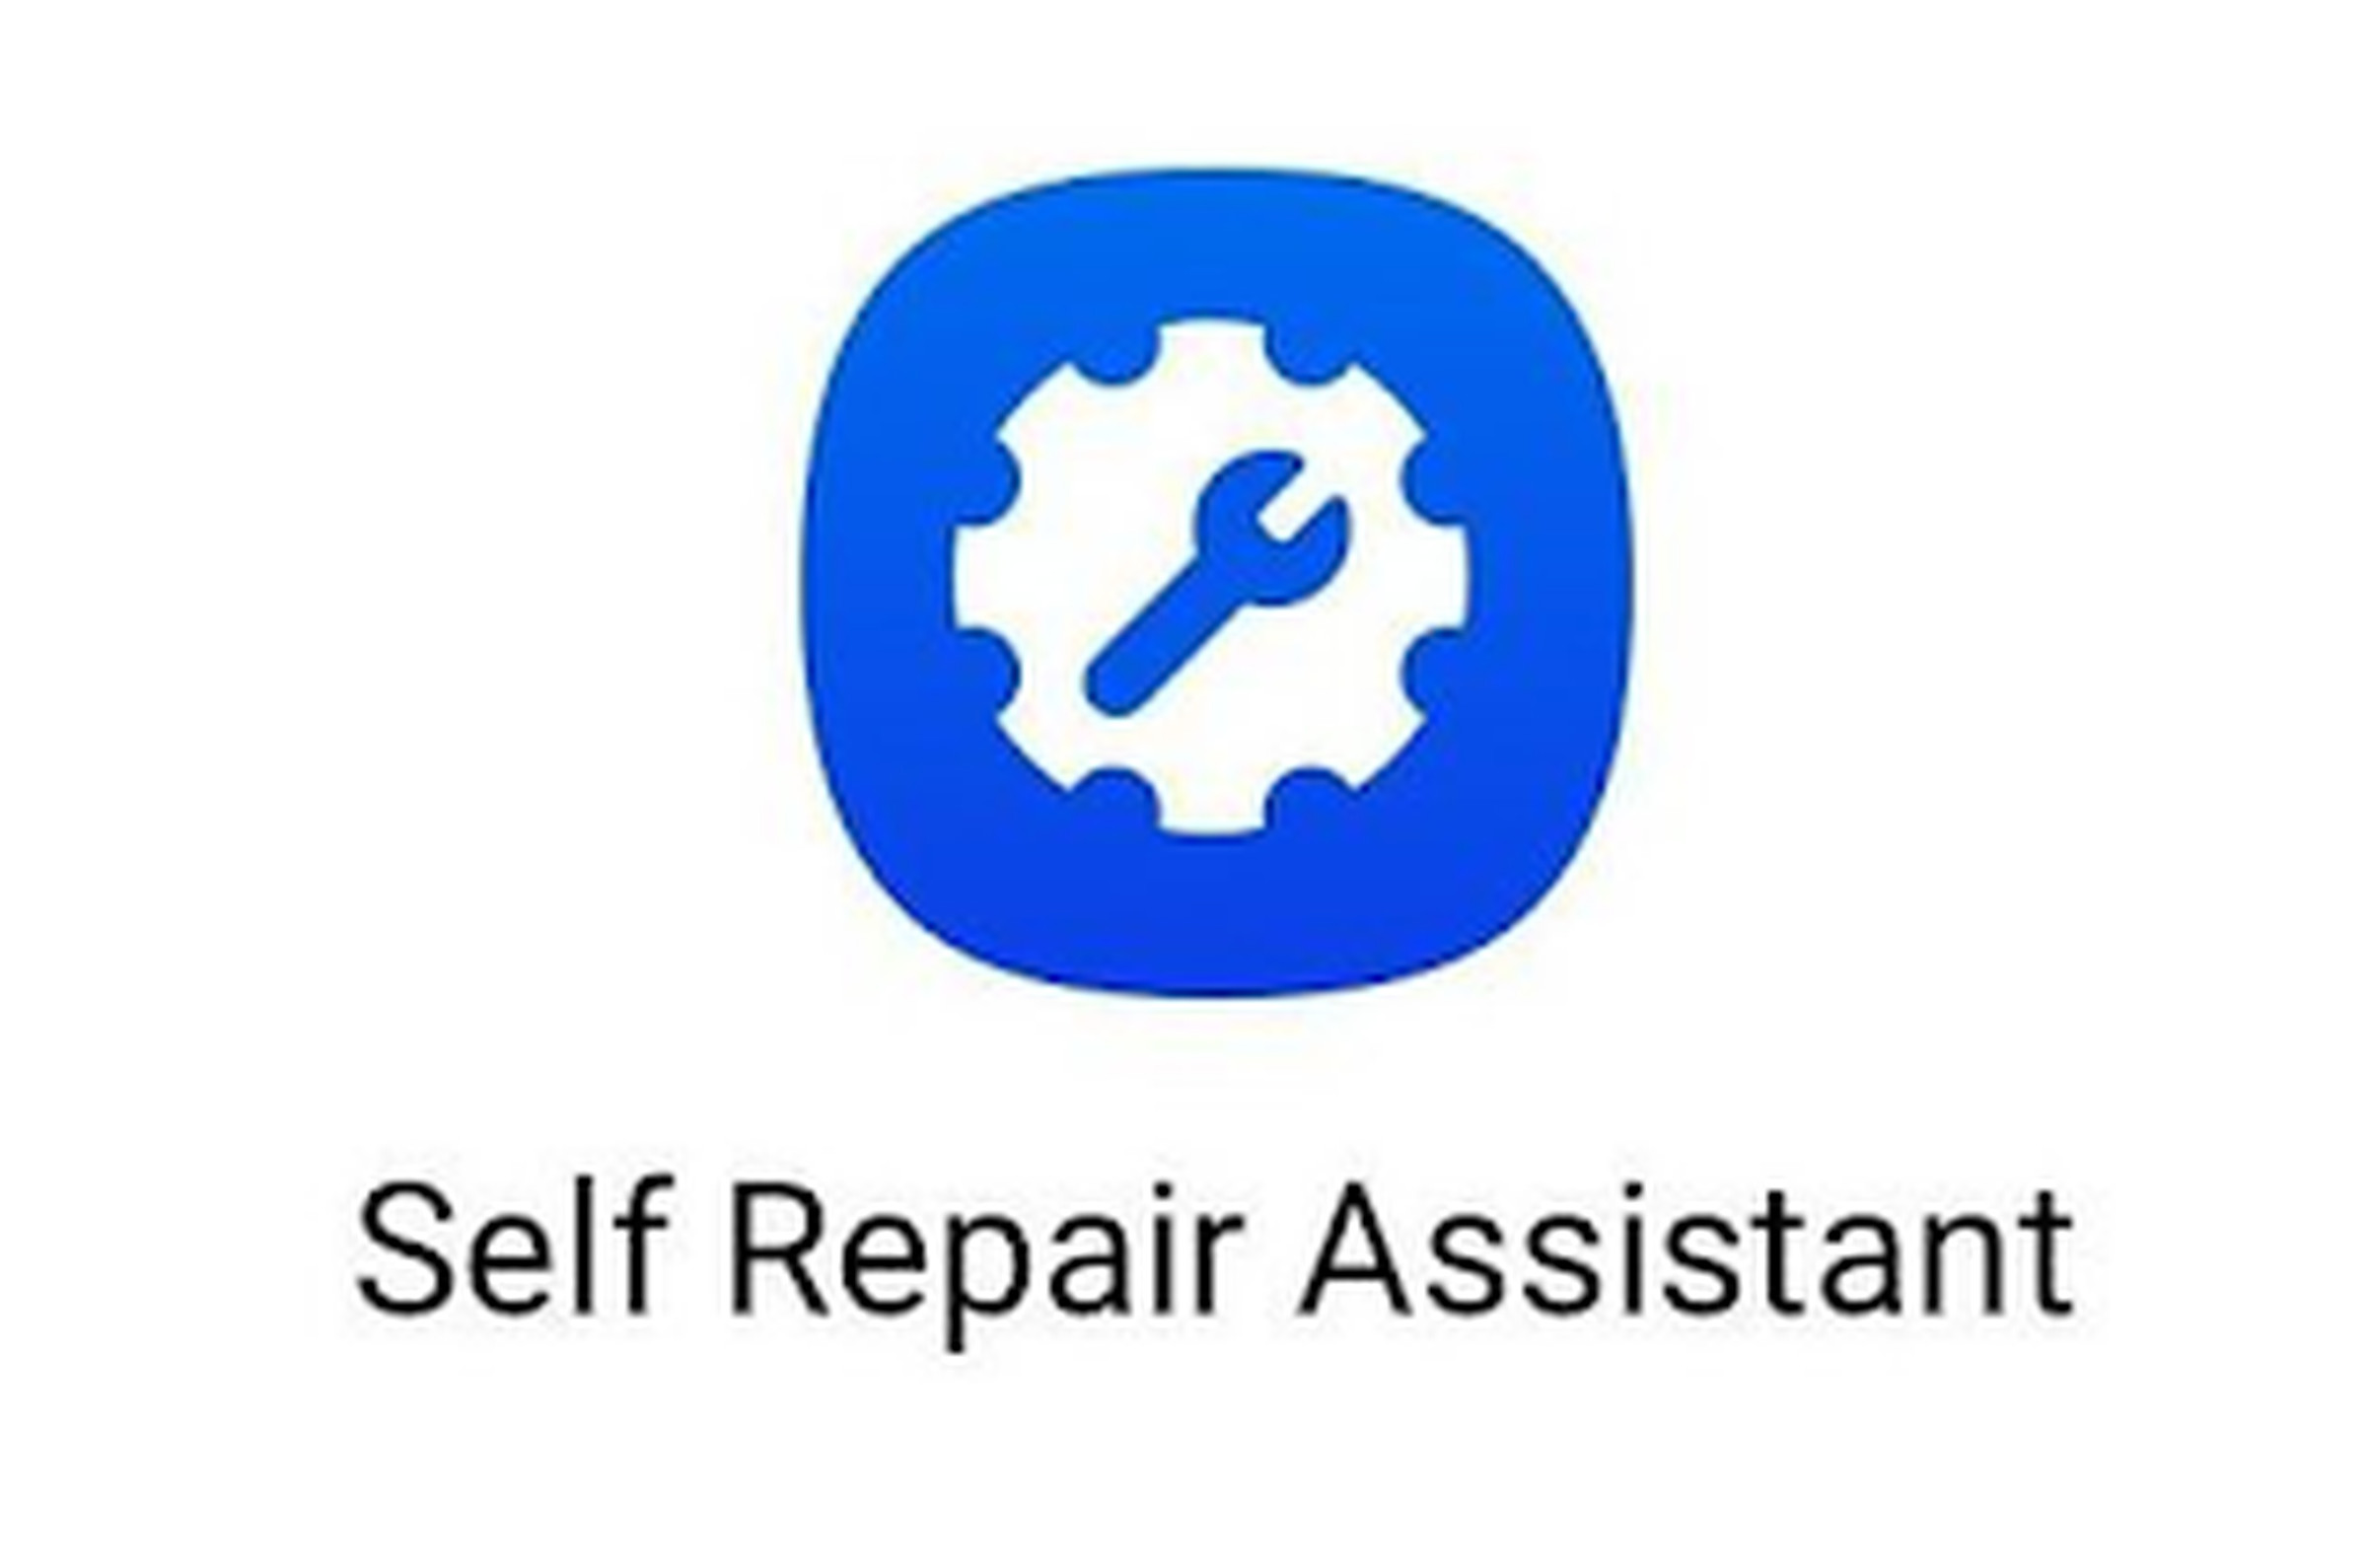 Ikon untuk aplikasi "Self Repair Assistant" yang diakui Samsung.